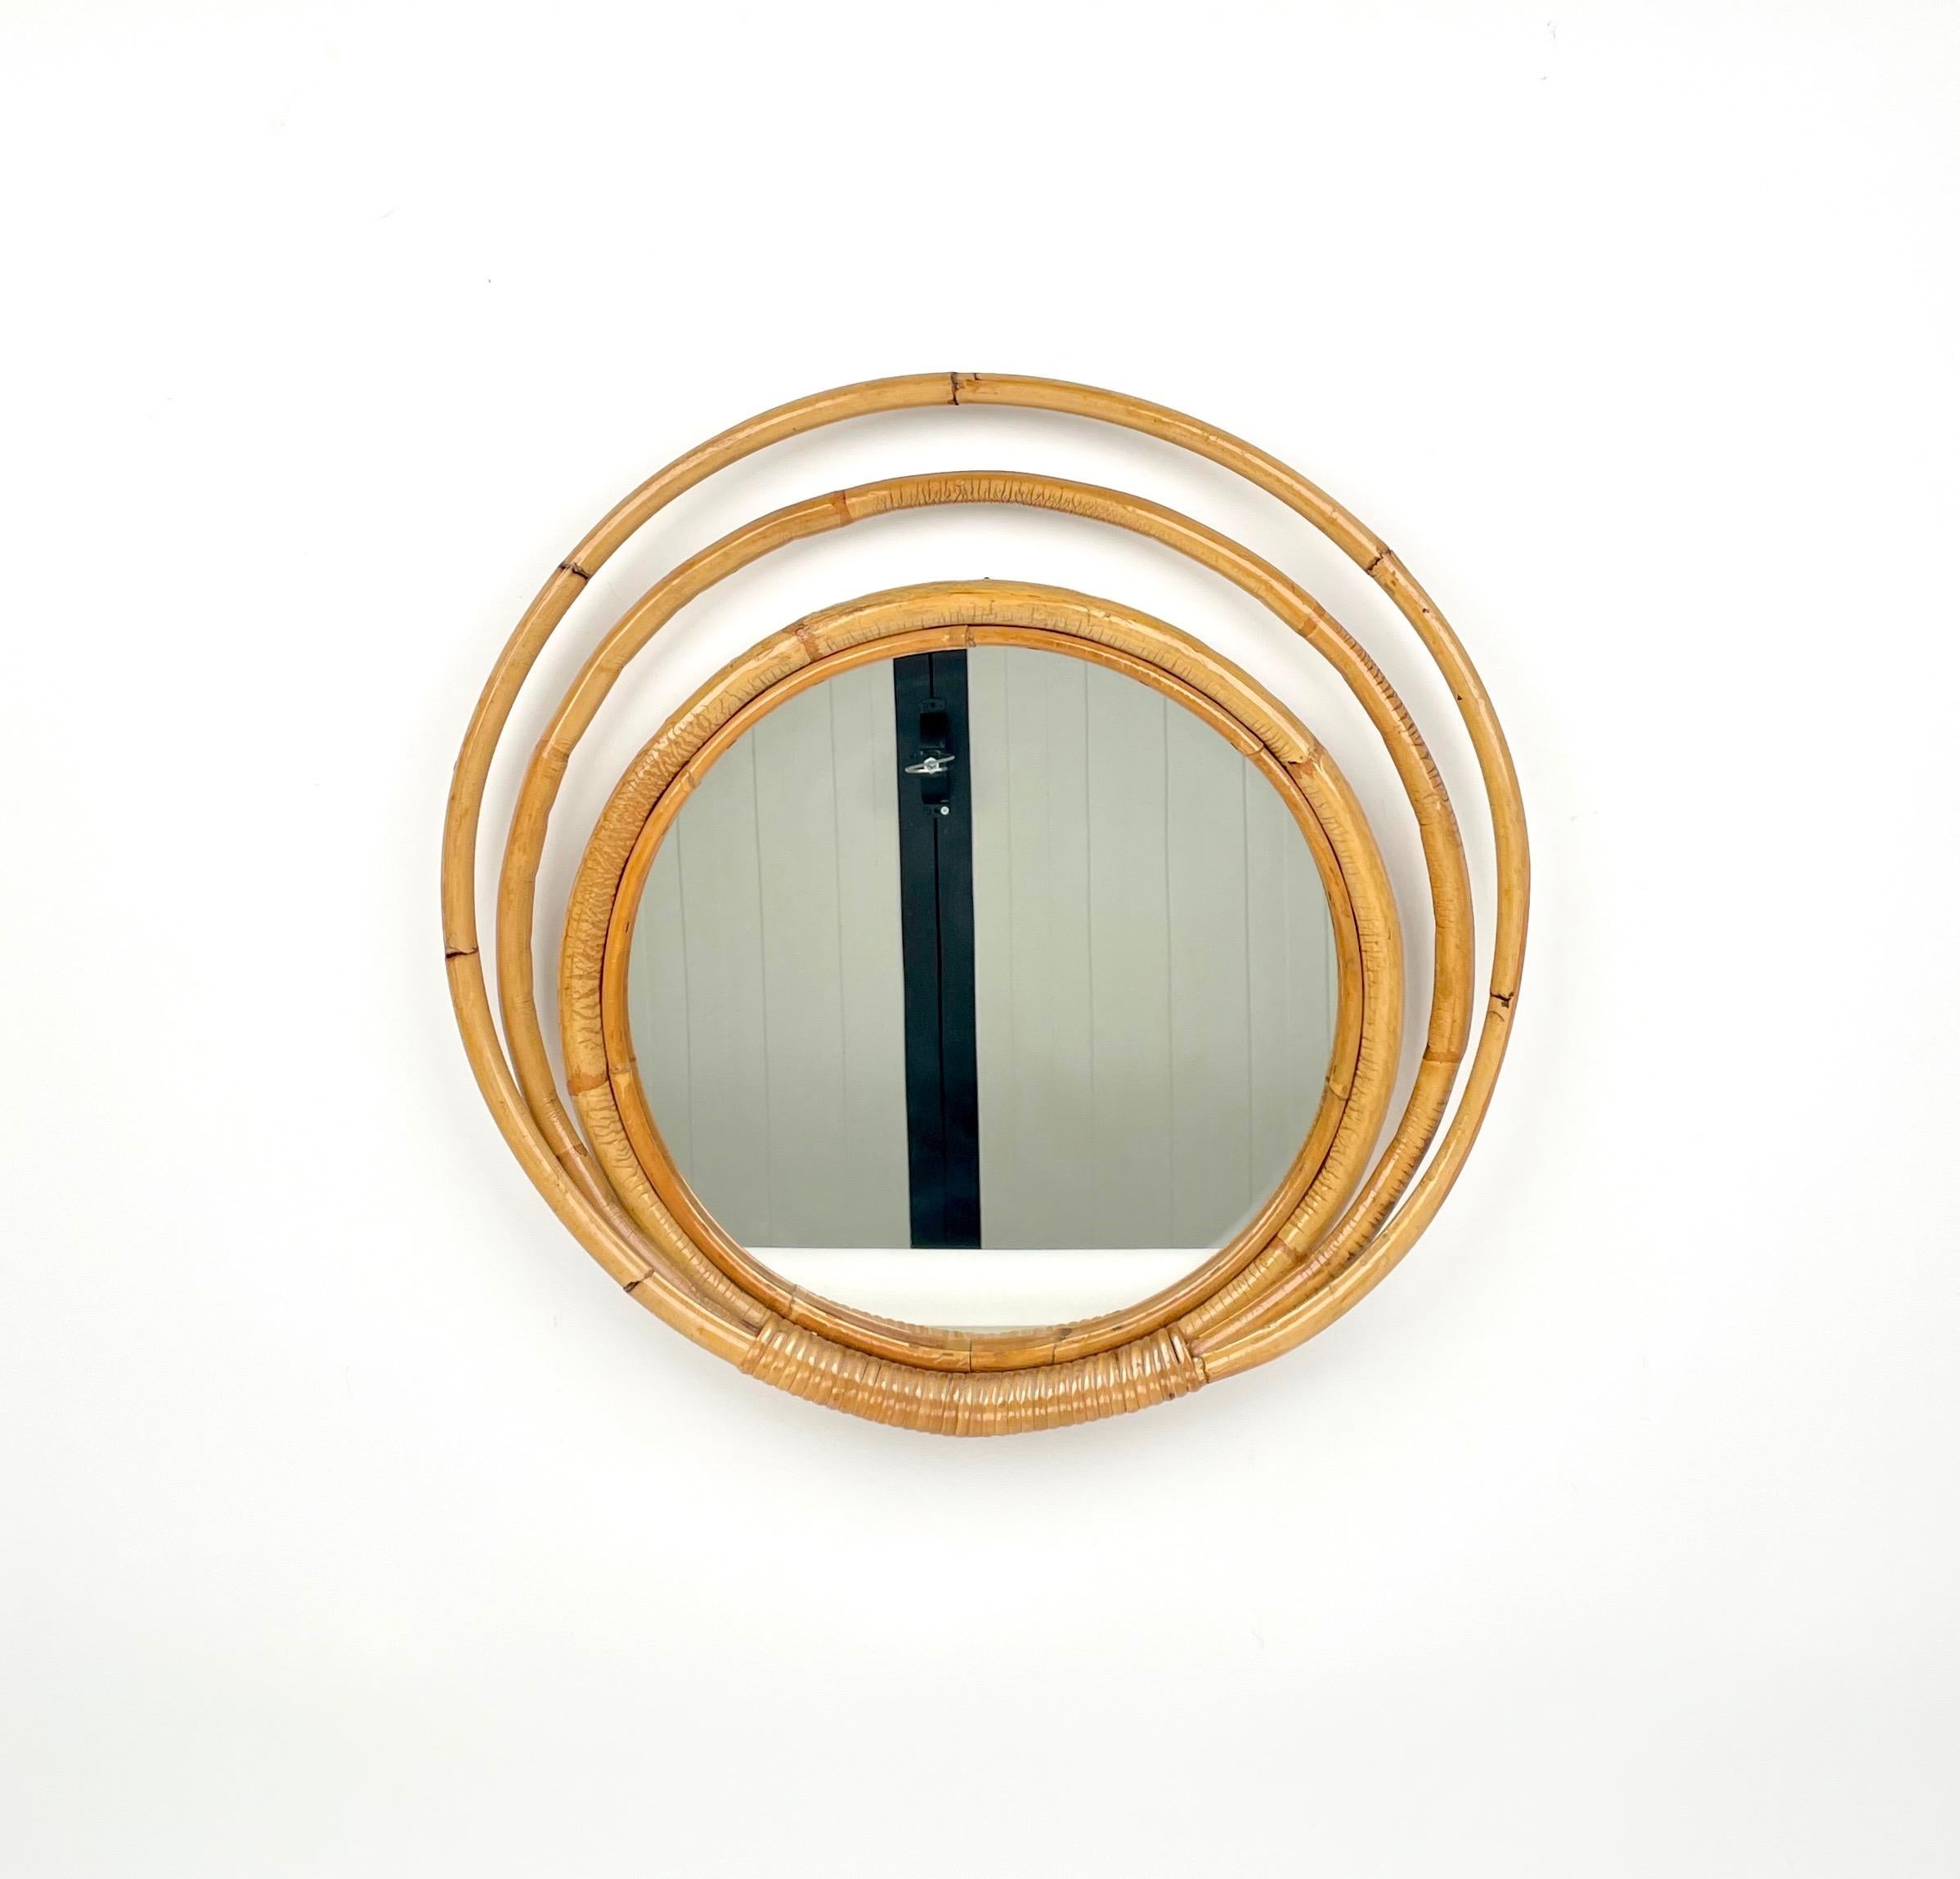 Miroir mural rond encadré par des cercles de bambou et de rotin à trois niveaux, fabriqué en Italie dans les années 1960.